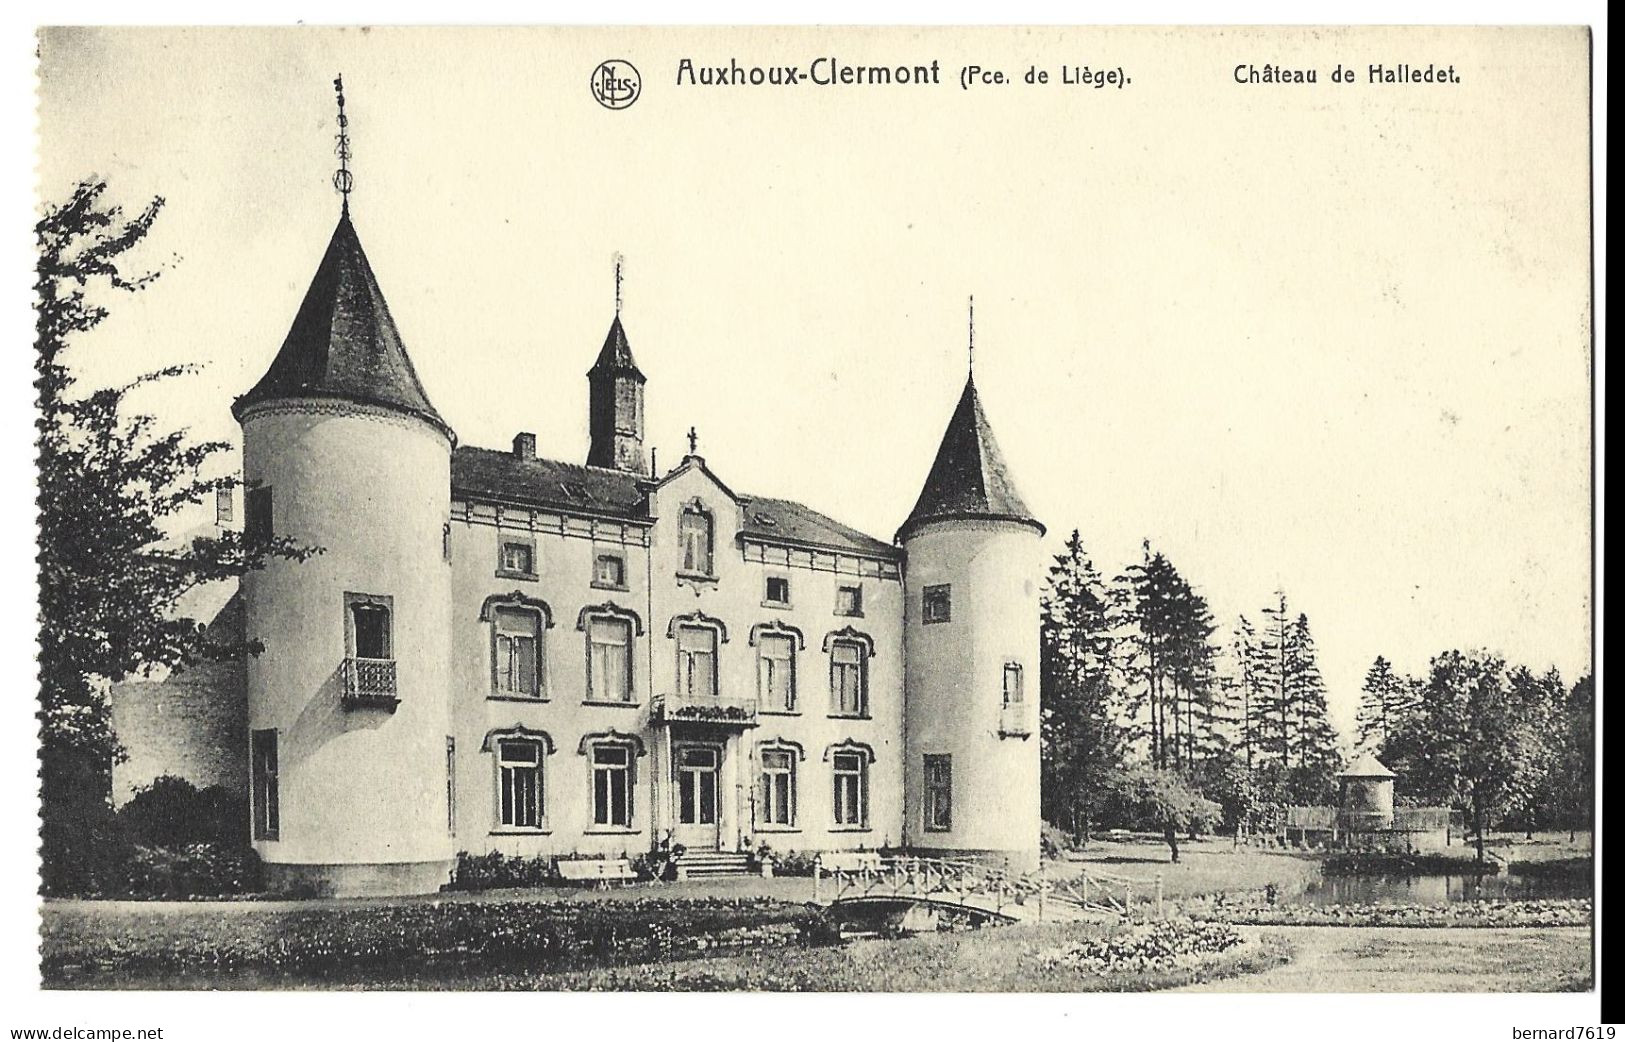 Belgique -   Auxhoux -clermont   Province De Liege  -  Chateau De Halledet - Engis